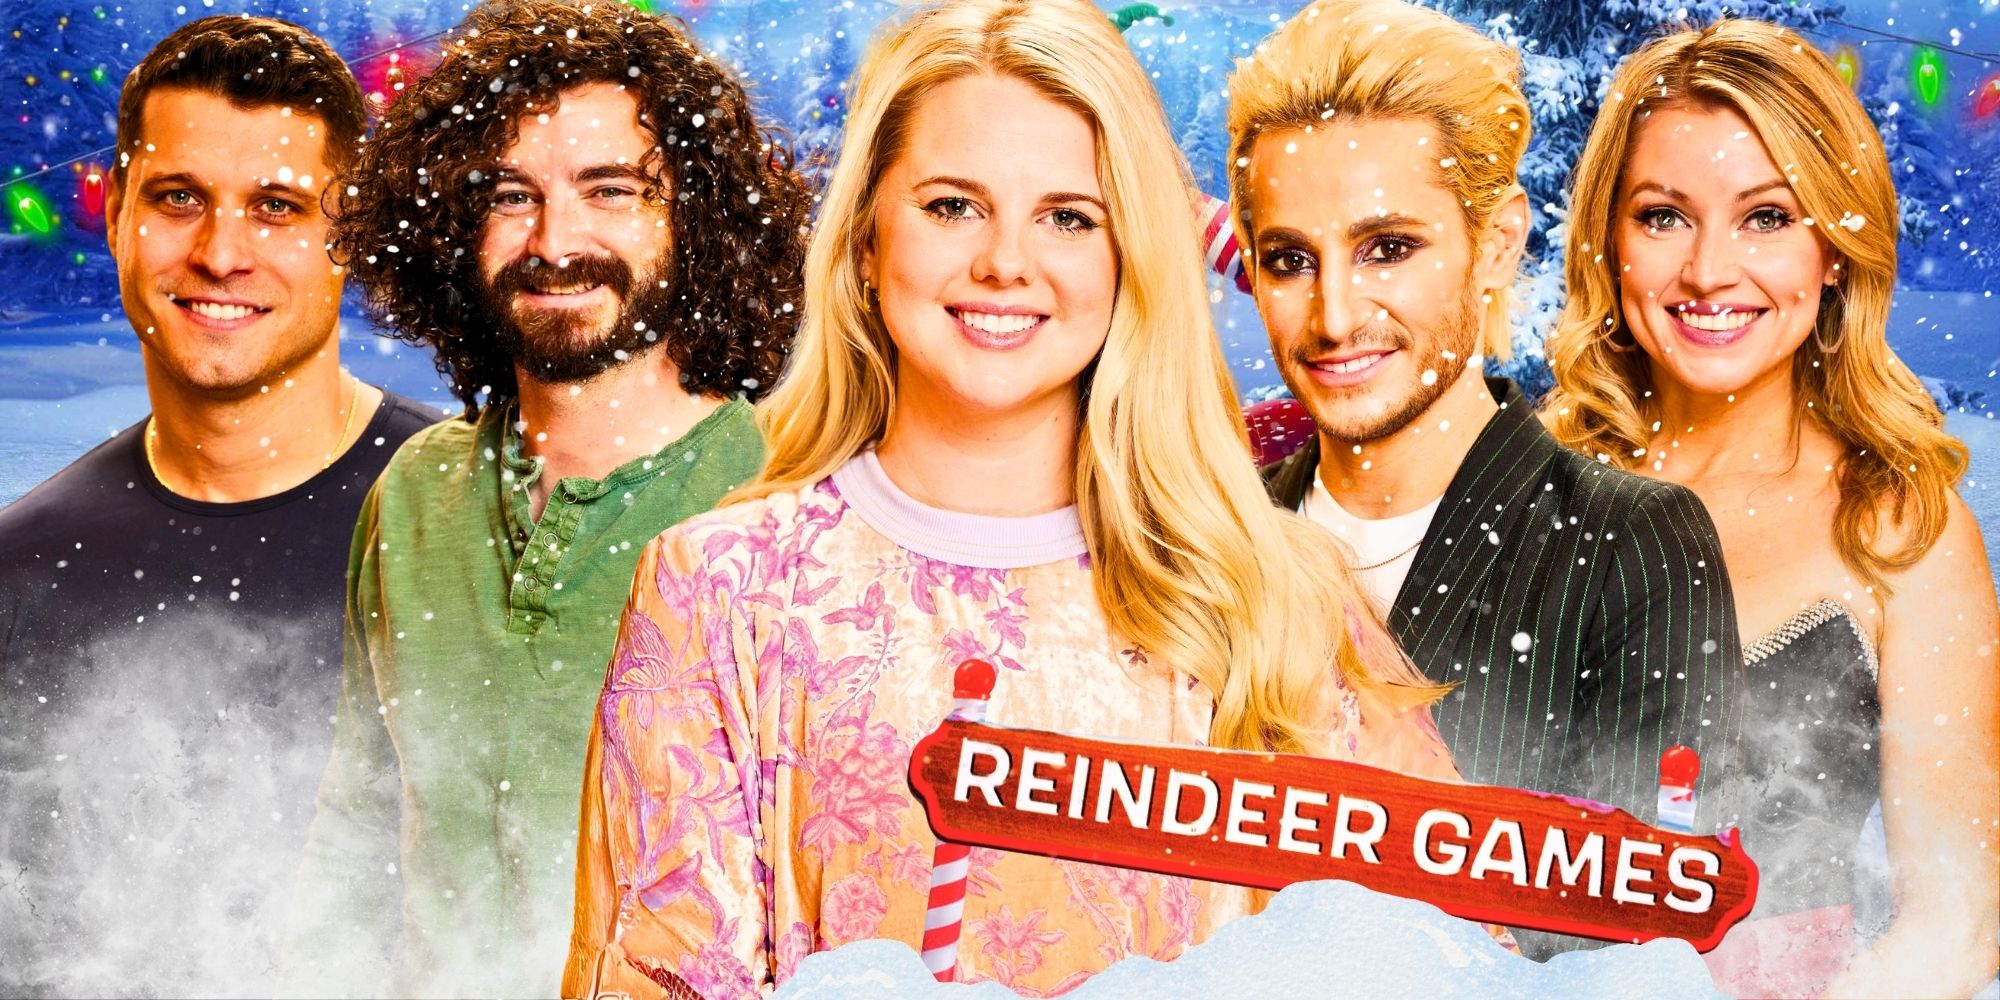 Big Brother Reindeer Games Cast smiling